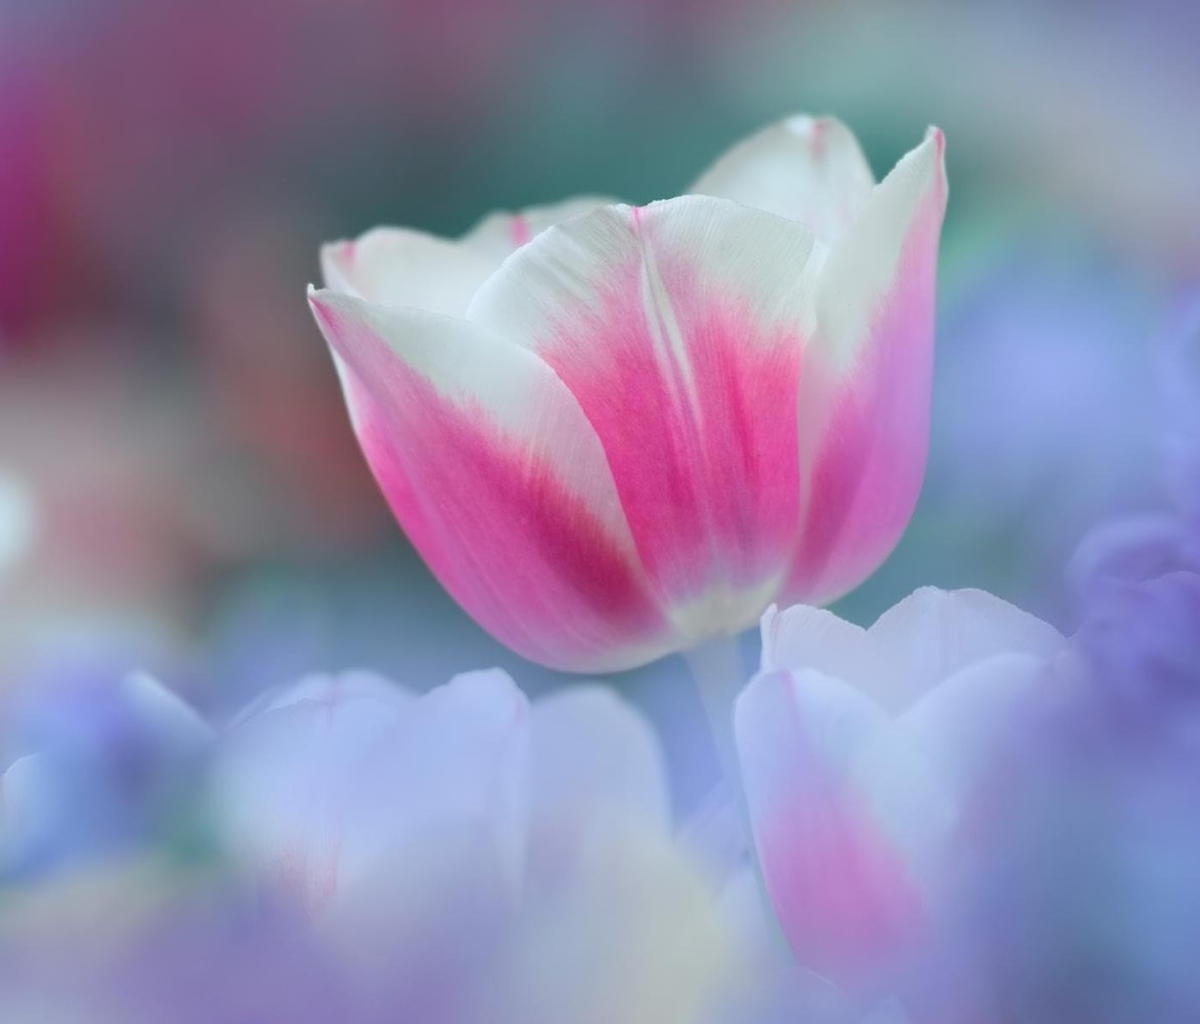 Sfondi Pink Tulips 1200x1024